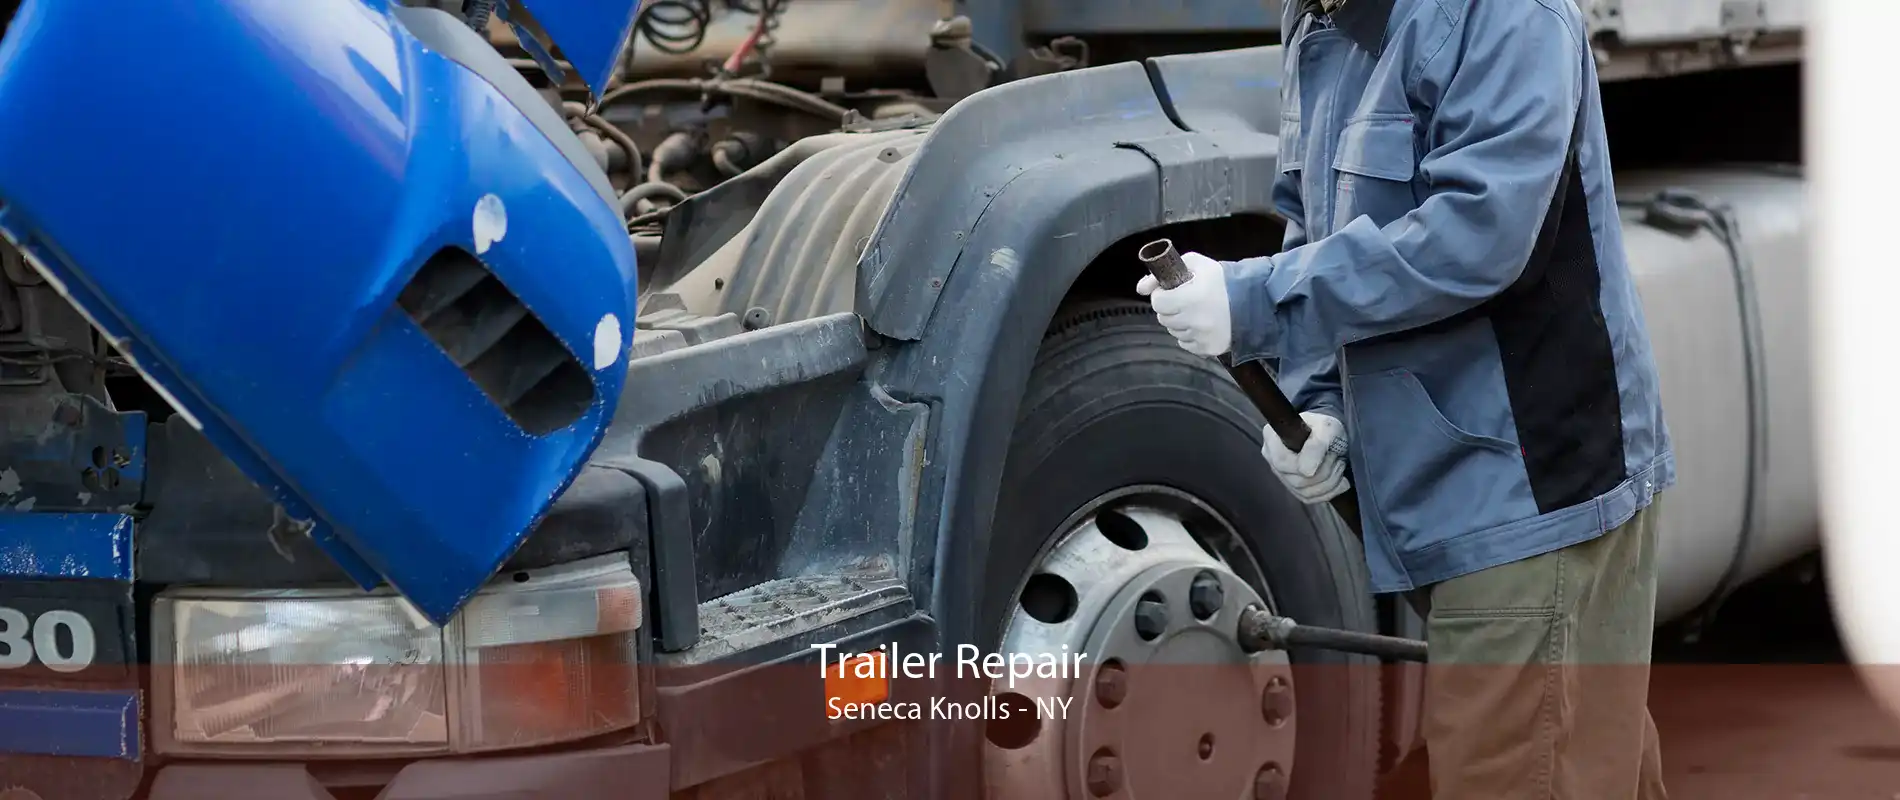 Trailer Repair Seneca Knolls - NY